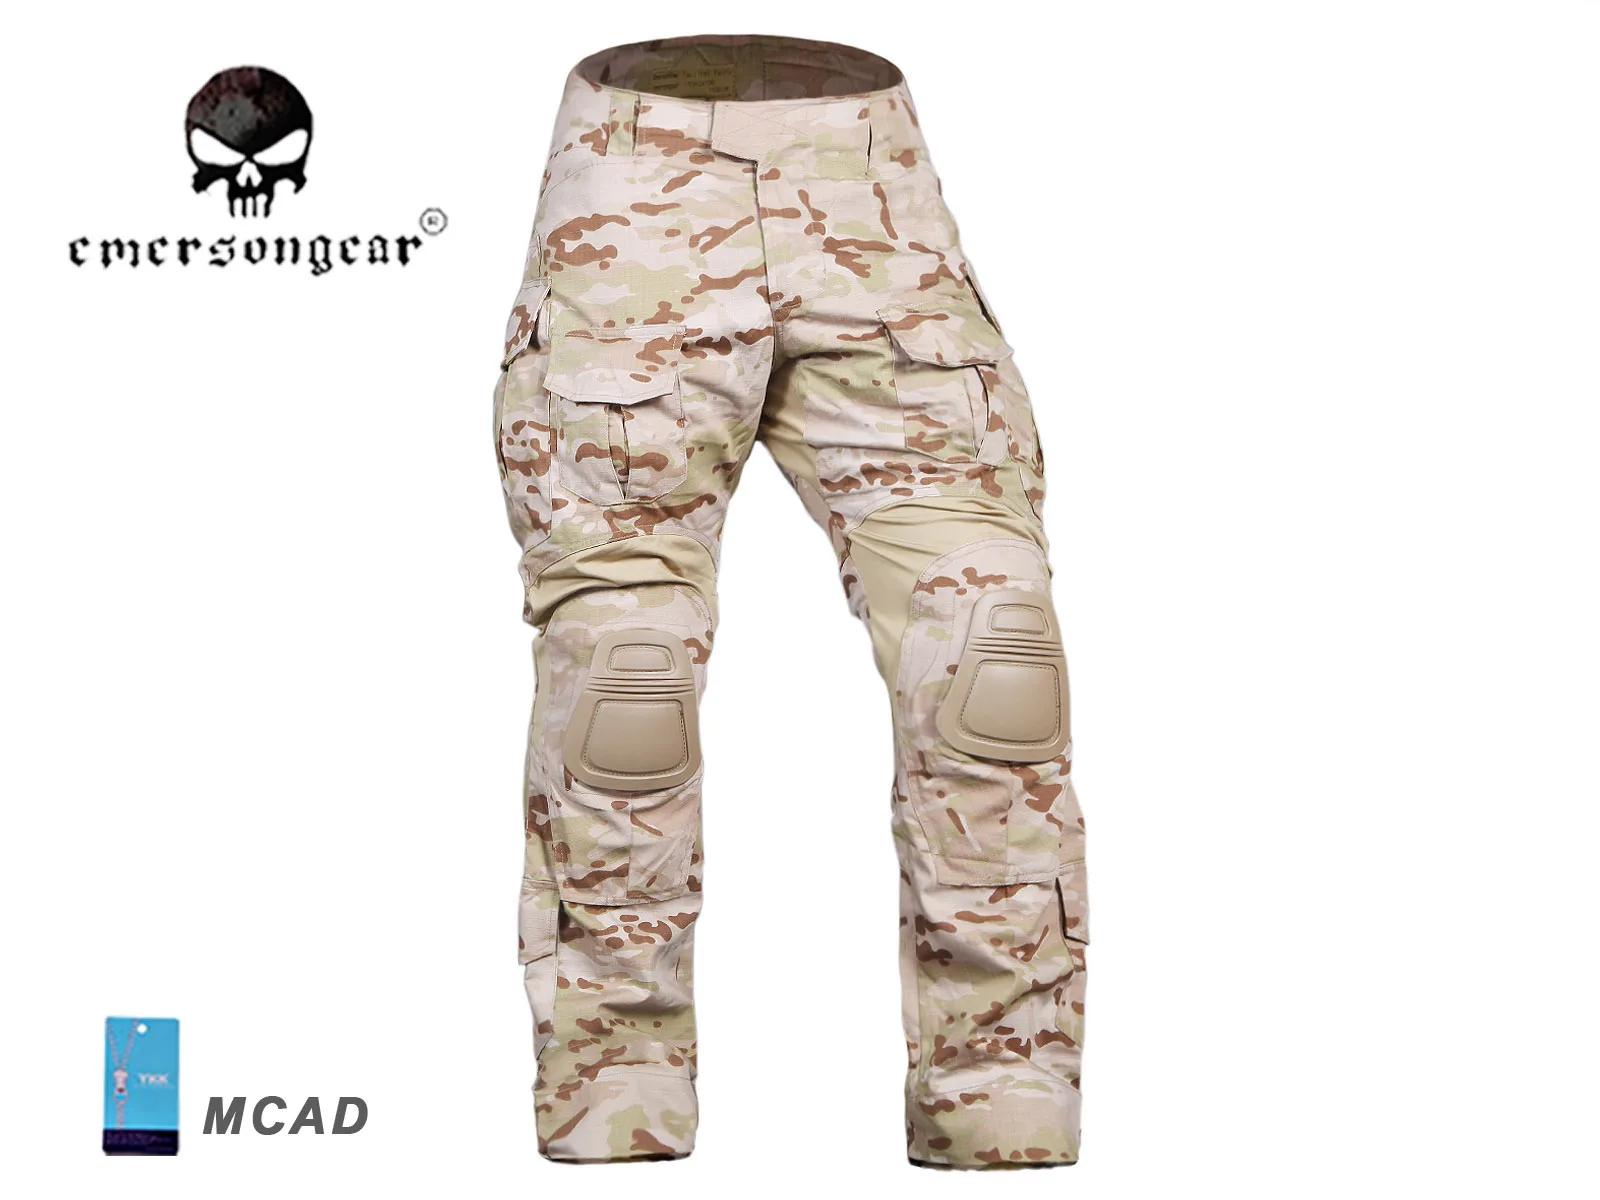 EMERSON Gen3 Combat Shirt Pants Suit Airsoft Military Tactical bdu Uniform Multicam Arid EM9255 EM9351